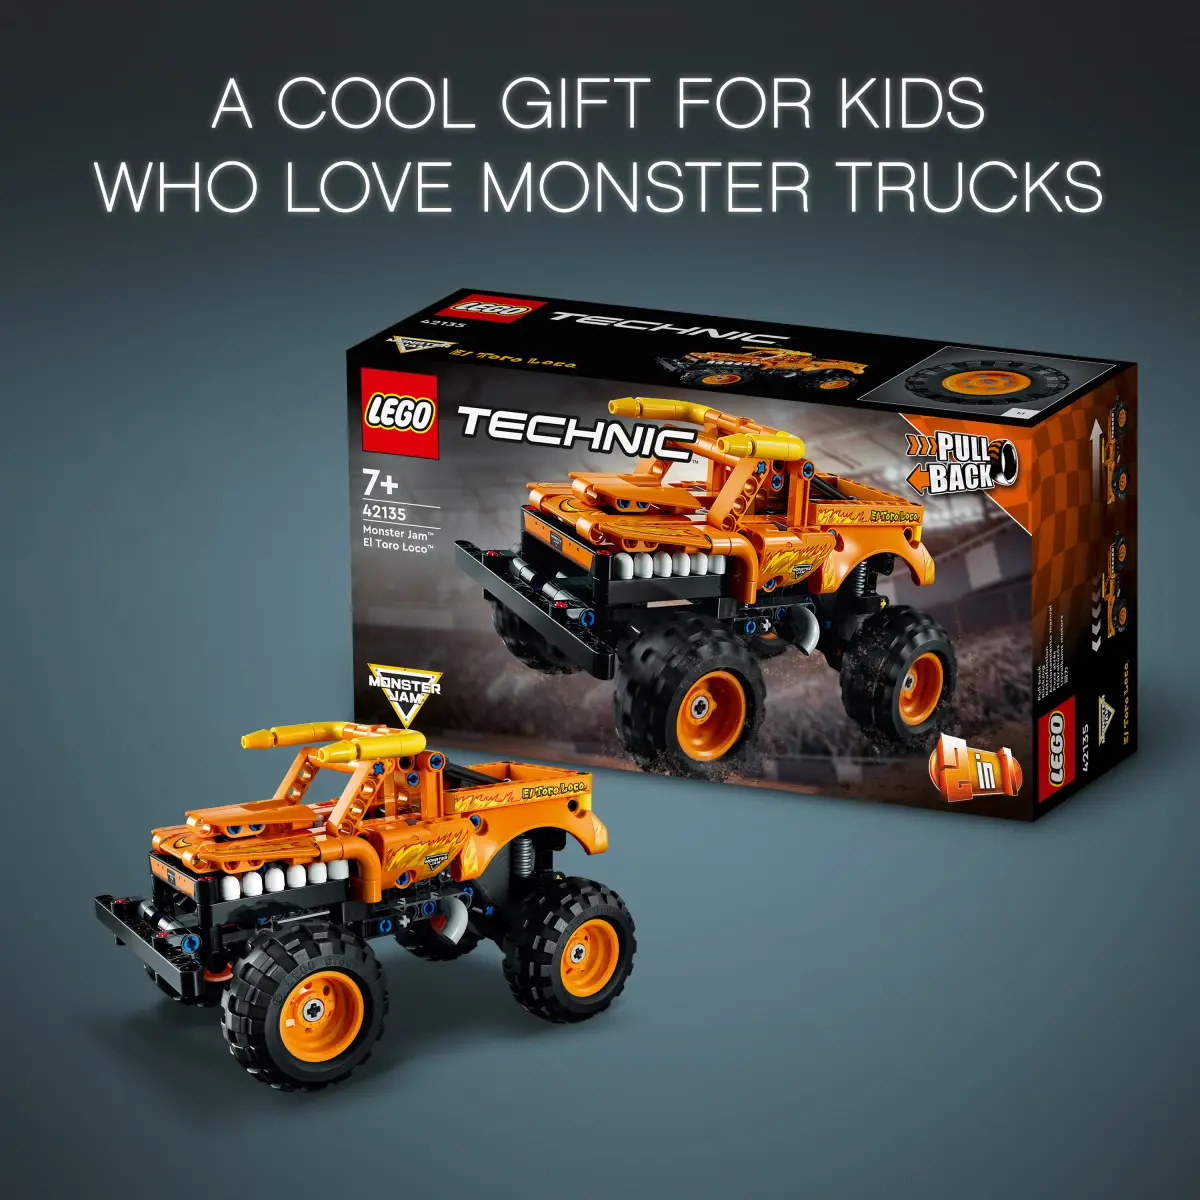 LEGO Technic Monster Jam El Toro Loco Model Building Kit, 247 Pieces, Multicolour, 7Y+